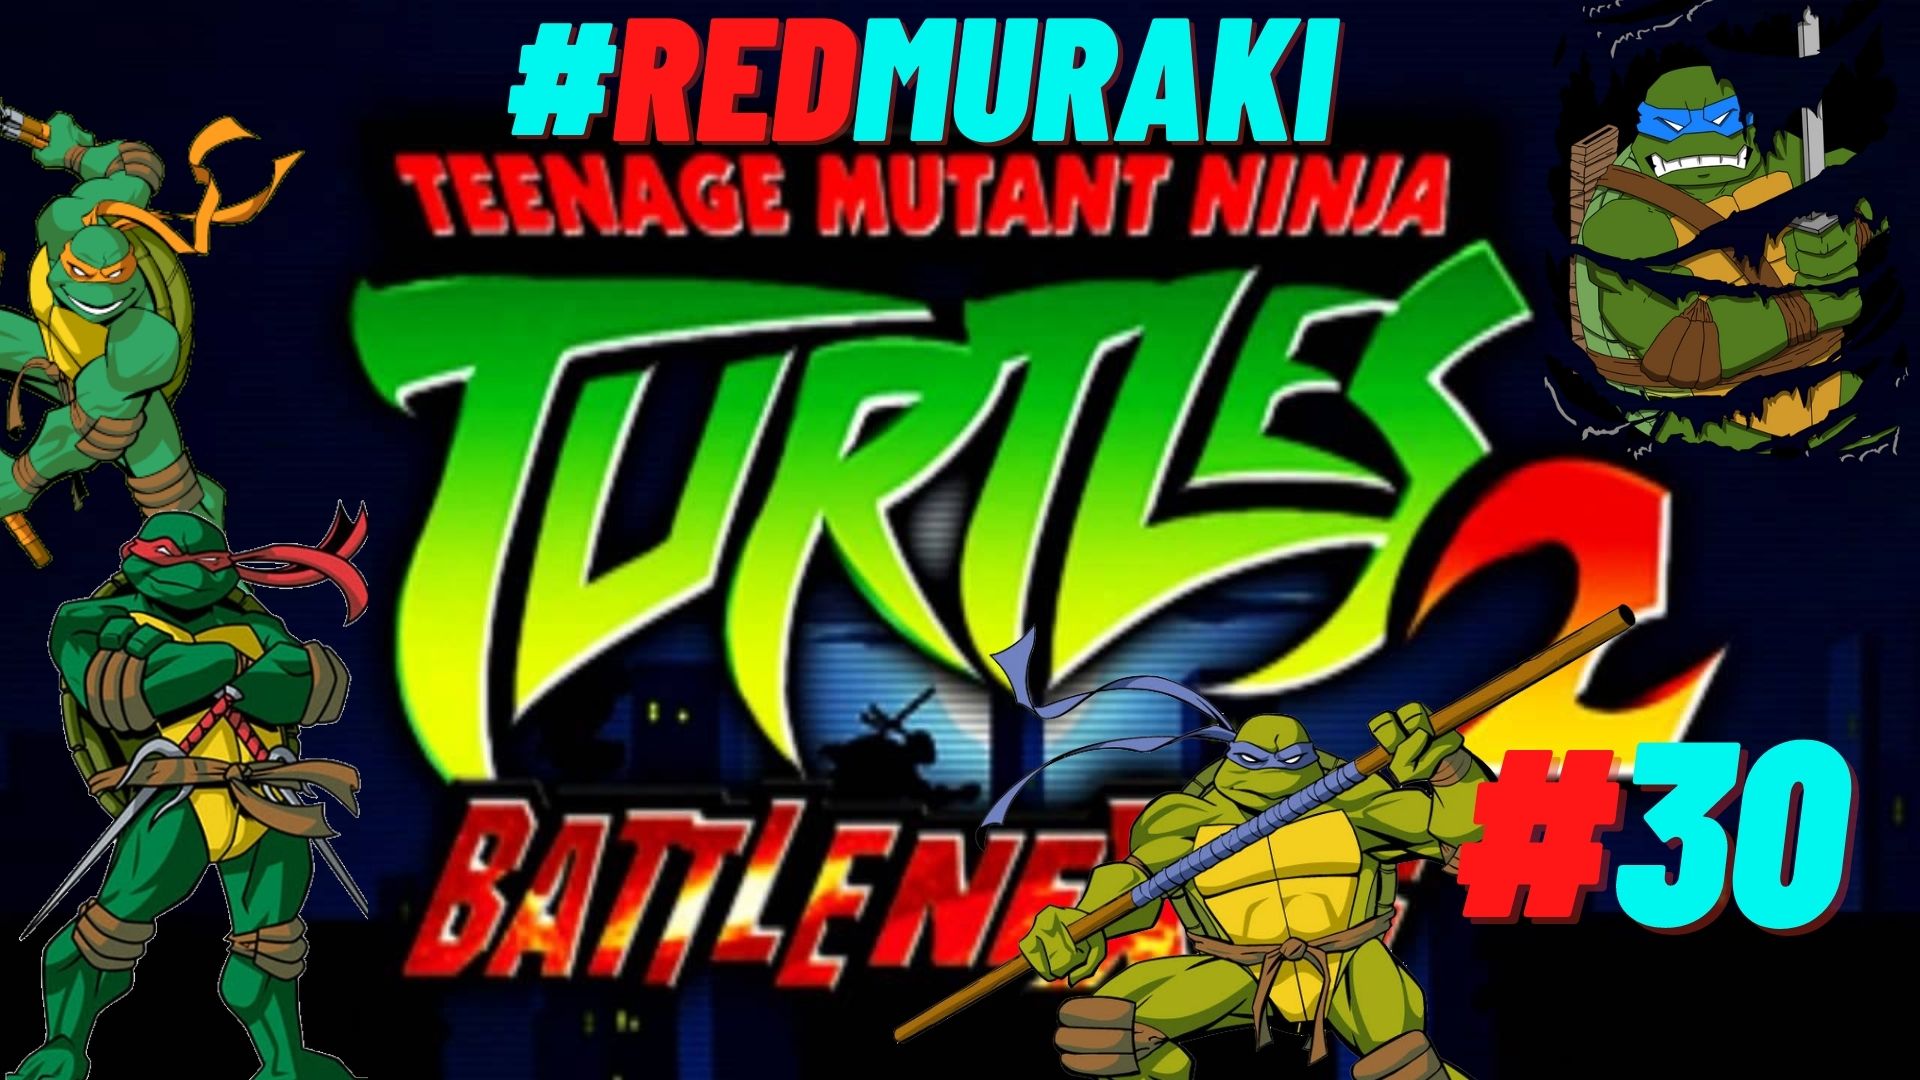 Teenage mutant ninja turtles 2 battle nexus steam фото 24